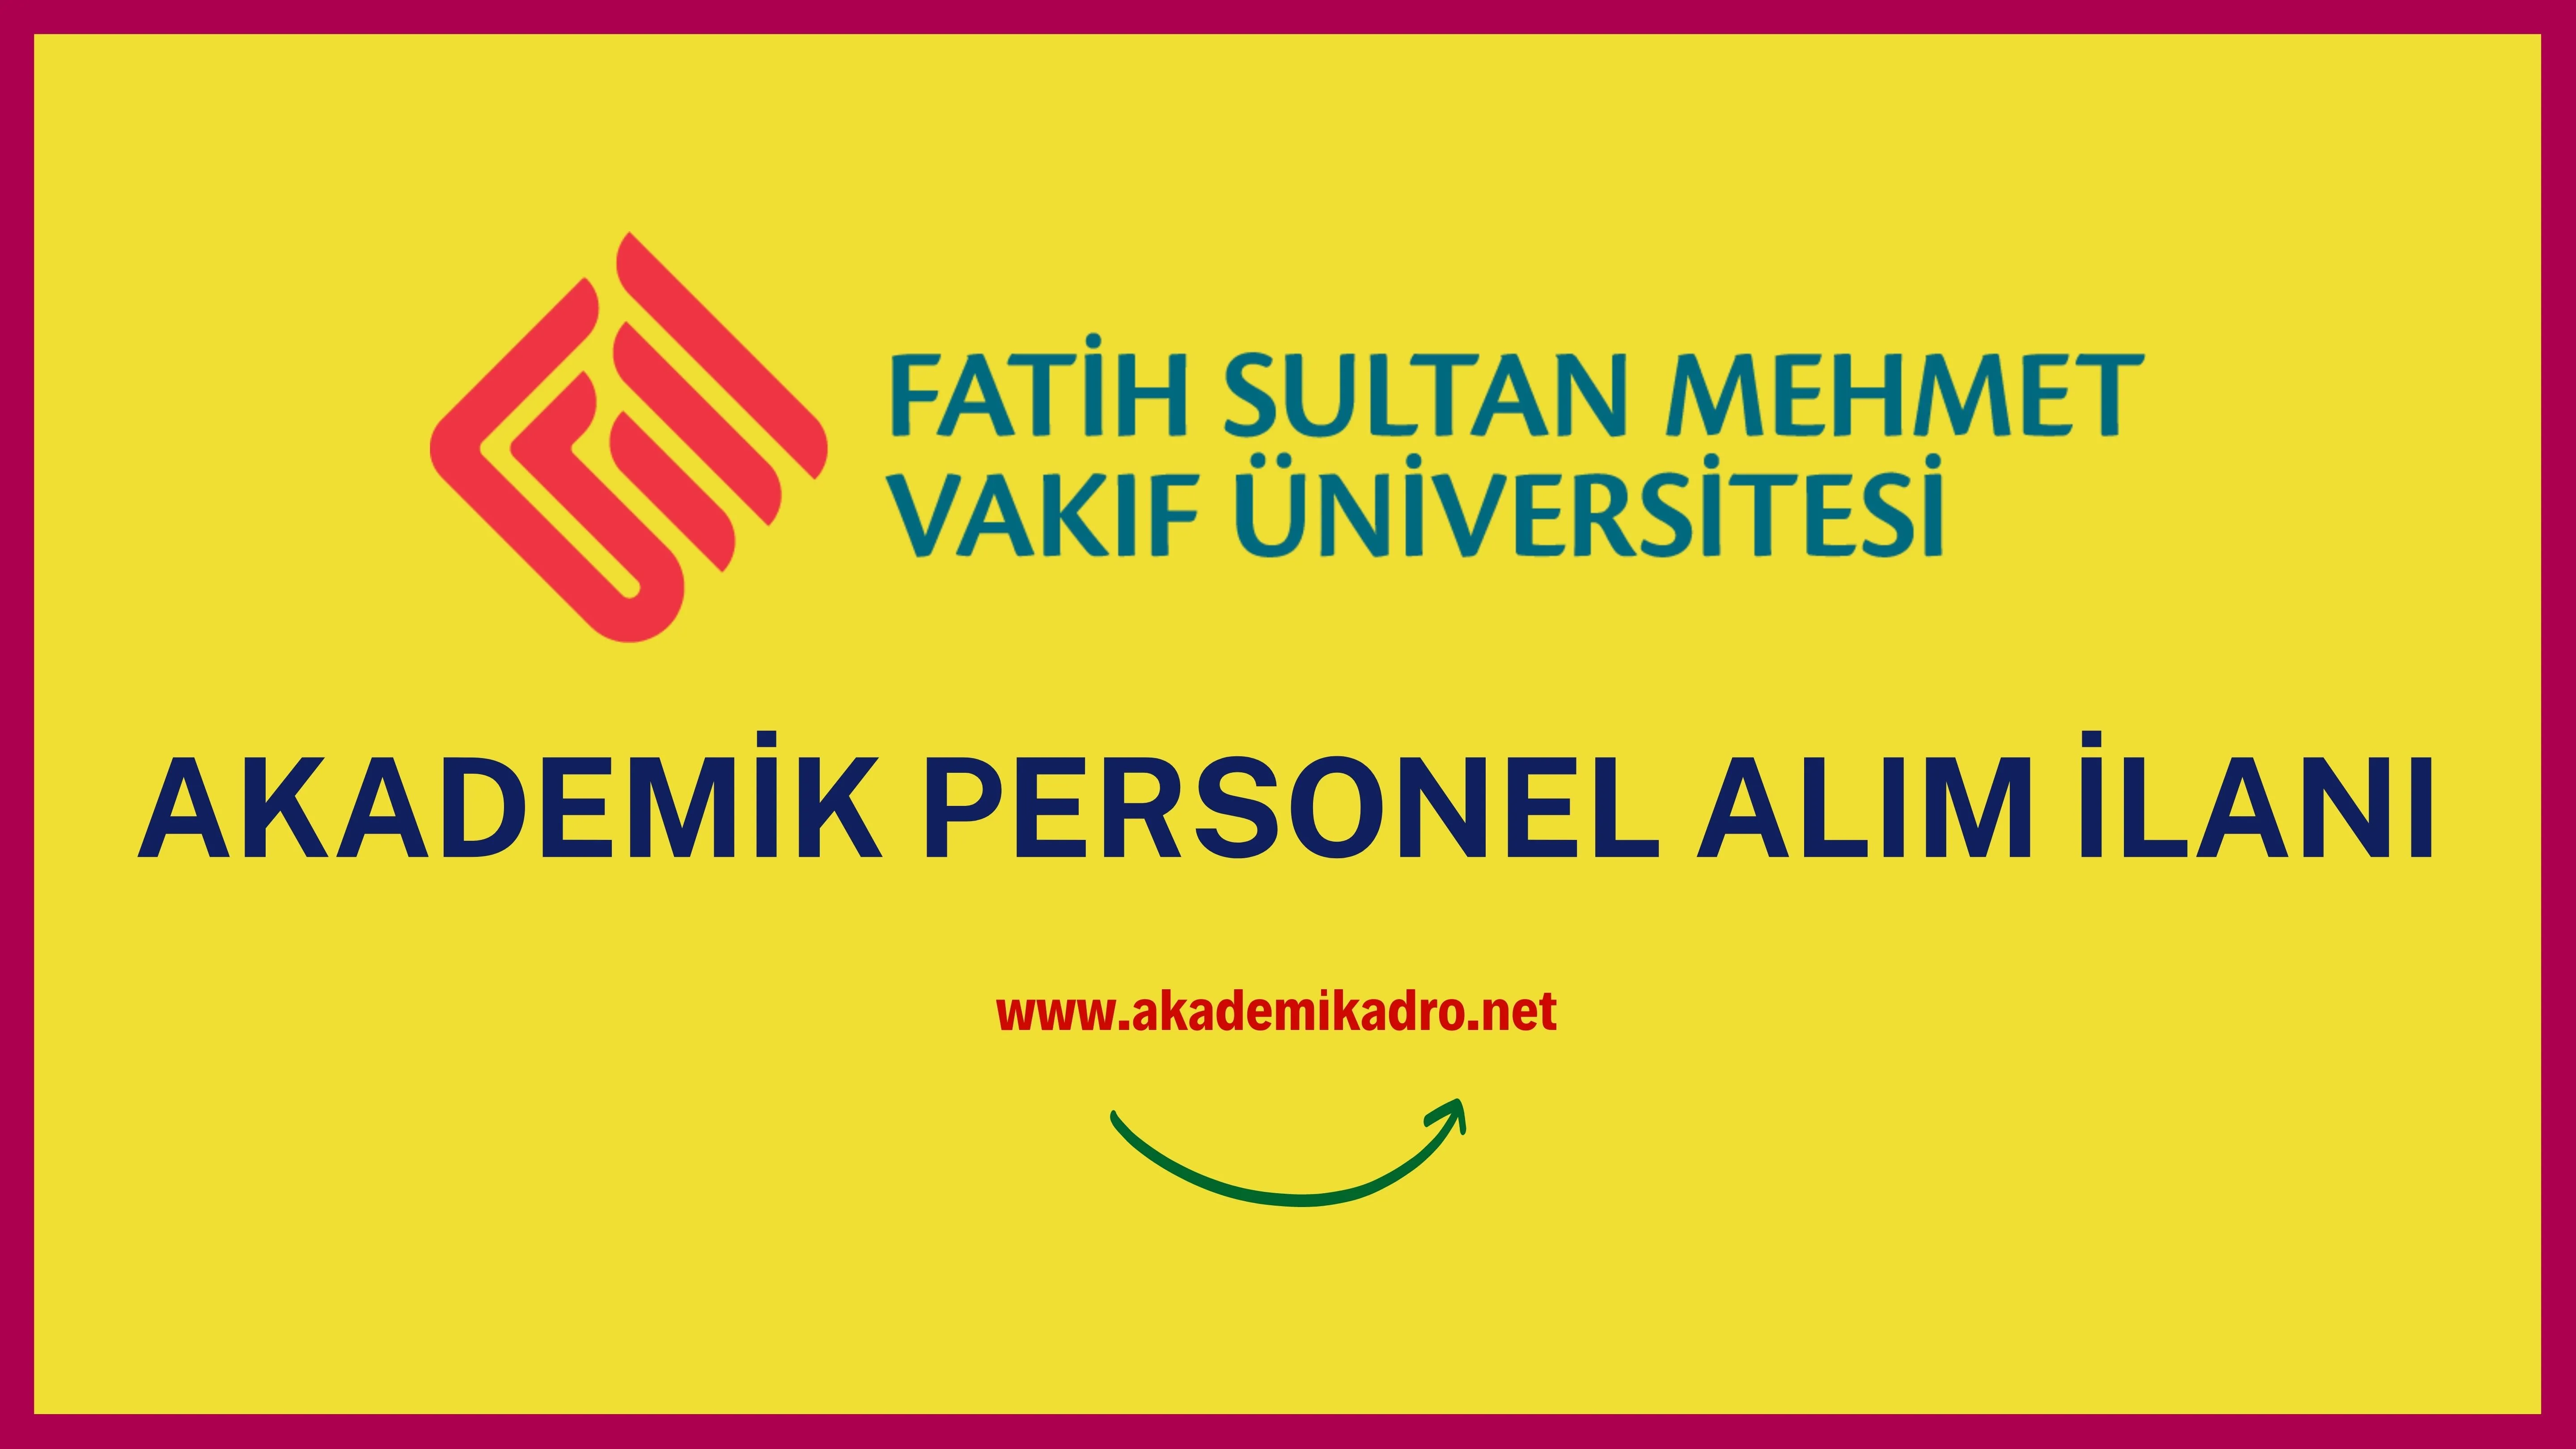 Fatih Sultan Mehmet Vakıf Üniversitesi bir çok alandan 15 akademik personel alacak.